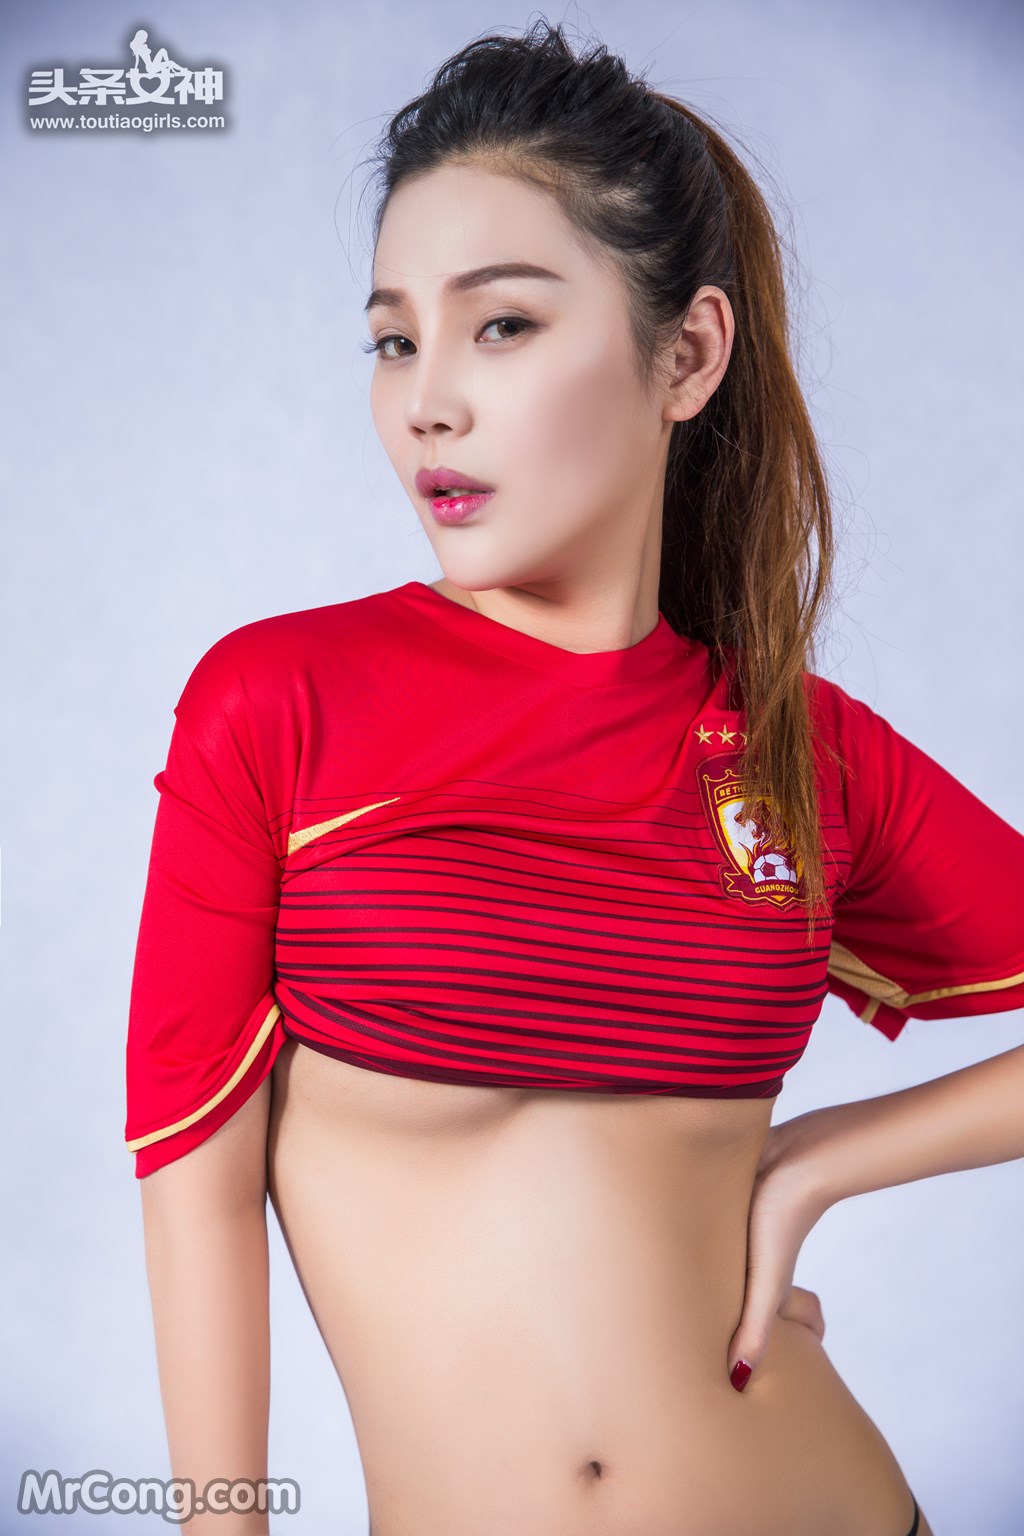 TouTiao 2017-02-22: Model Zhou Yu Ran (周 予 然) (26 photos)